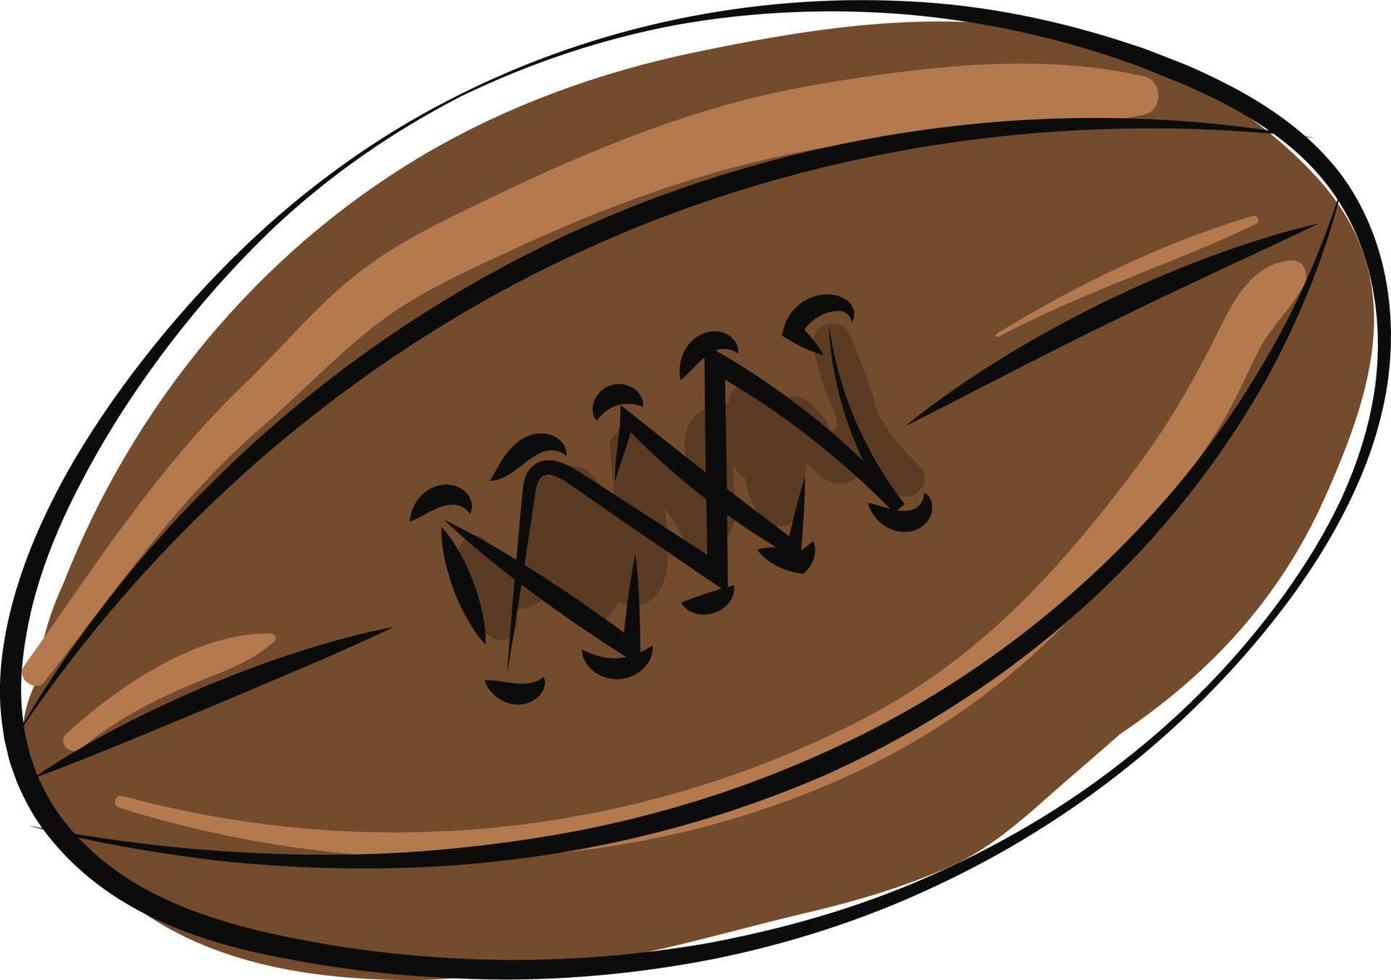 bola de rugby, ilustração, vetor em fundo branco.